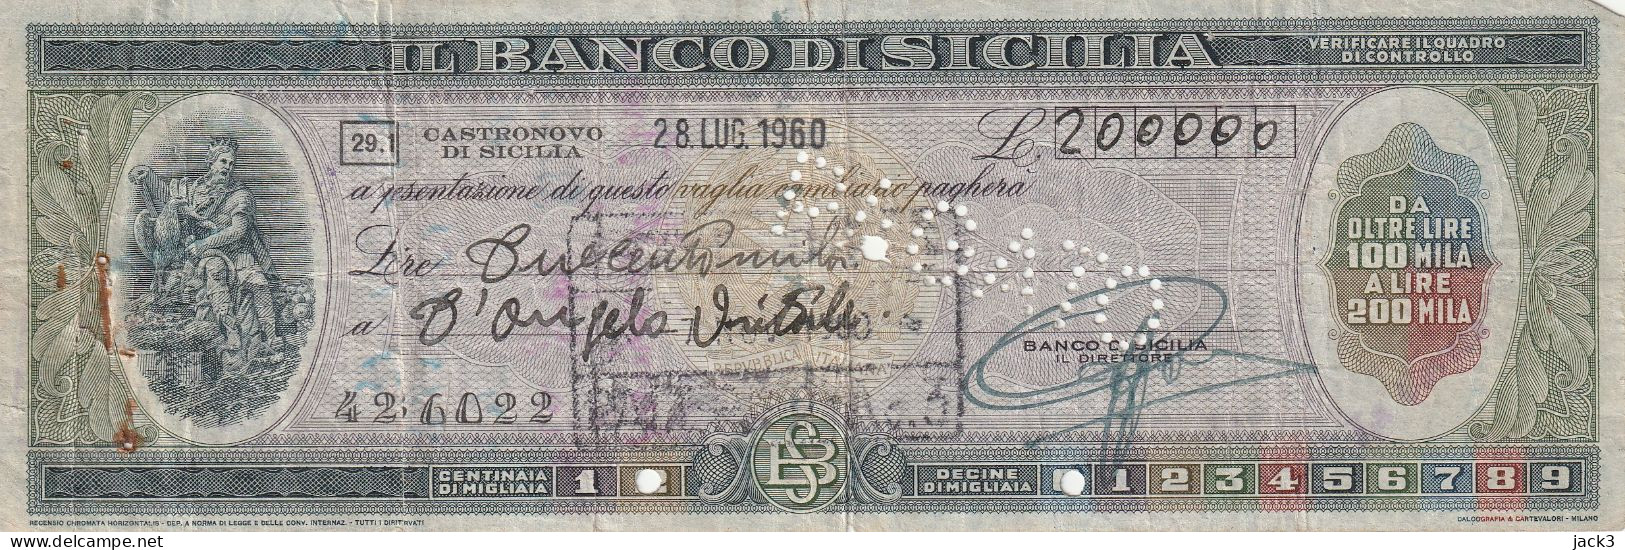 ASSEGNO - BANCO DI SICILIA - CASTRONOVO DI SICILIA 1960 - Cheques En Traveller's Cheques